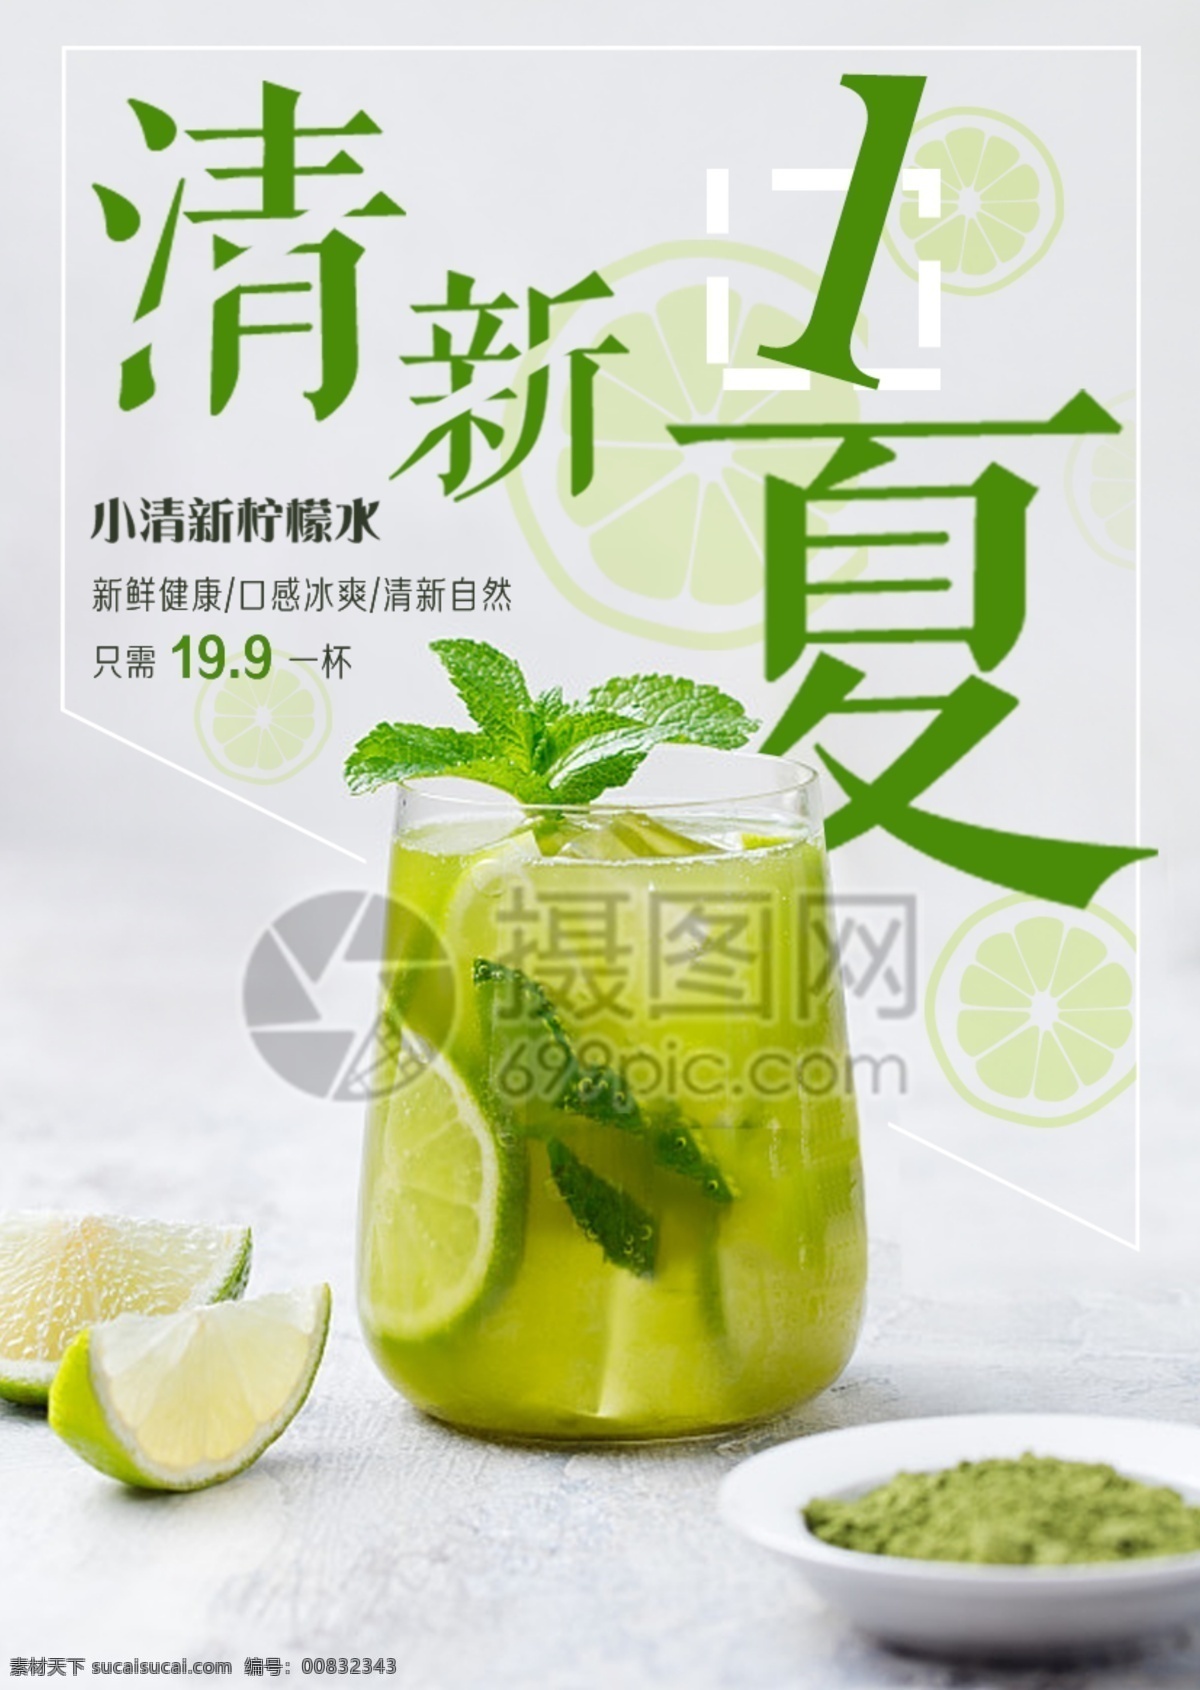 清新 一夏 夏日 冰 饮 海报 柠檬水 夏天 绿色 饮品 自然 夏日冰饮 促销海报 饮品折扣